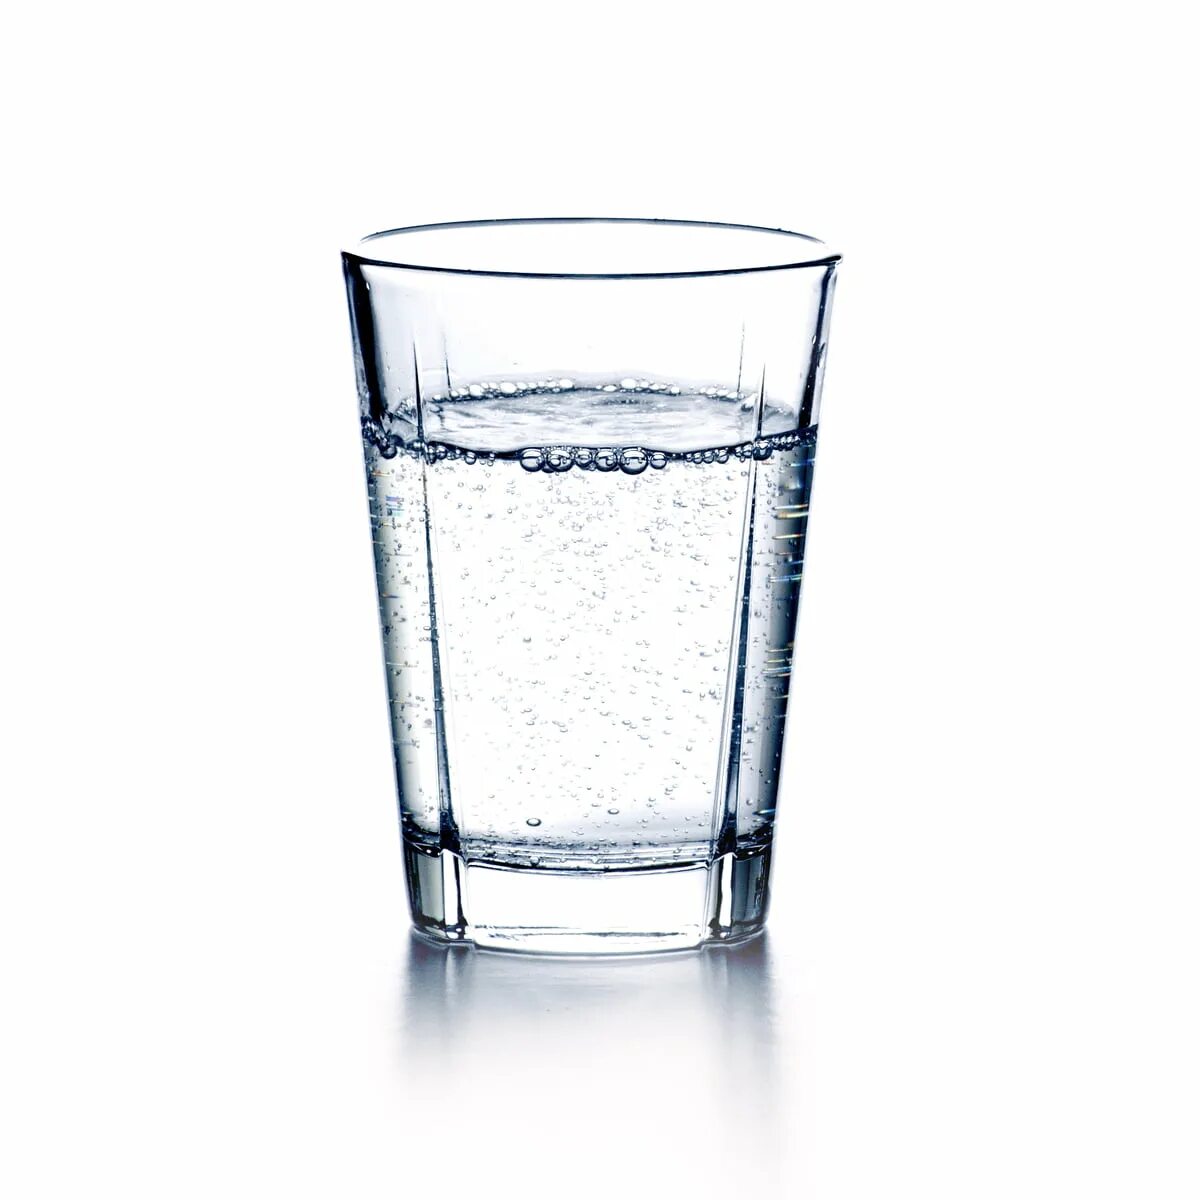 0 25 стакан воды. Стакан воды. Прозрачная вода в стакане. Прозрачный стакан. Стаканчик с водой.